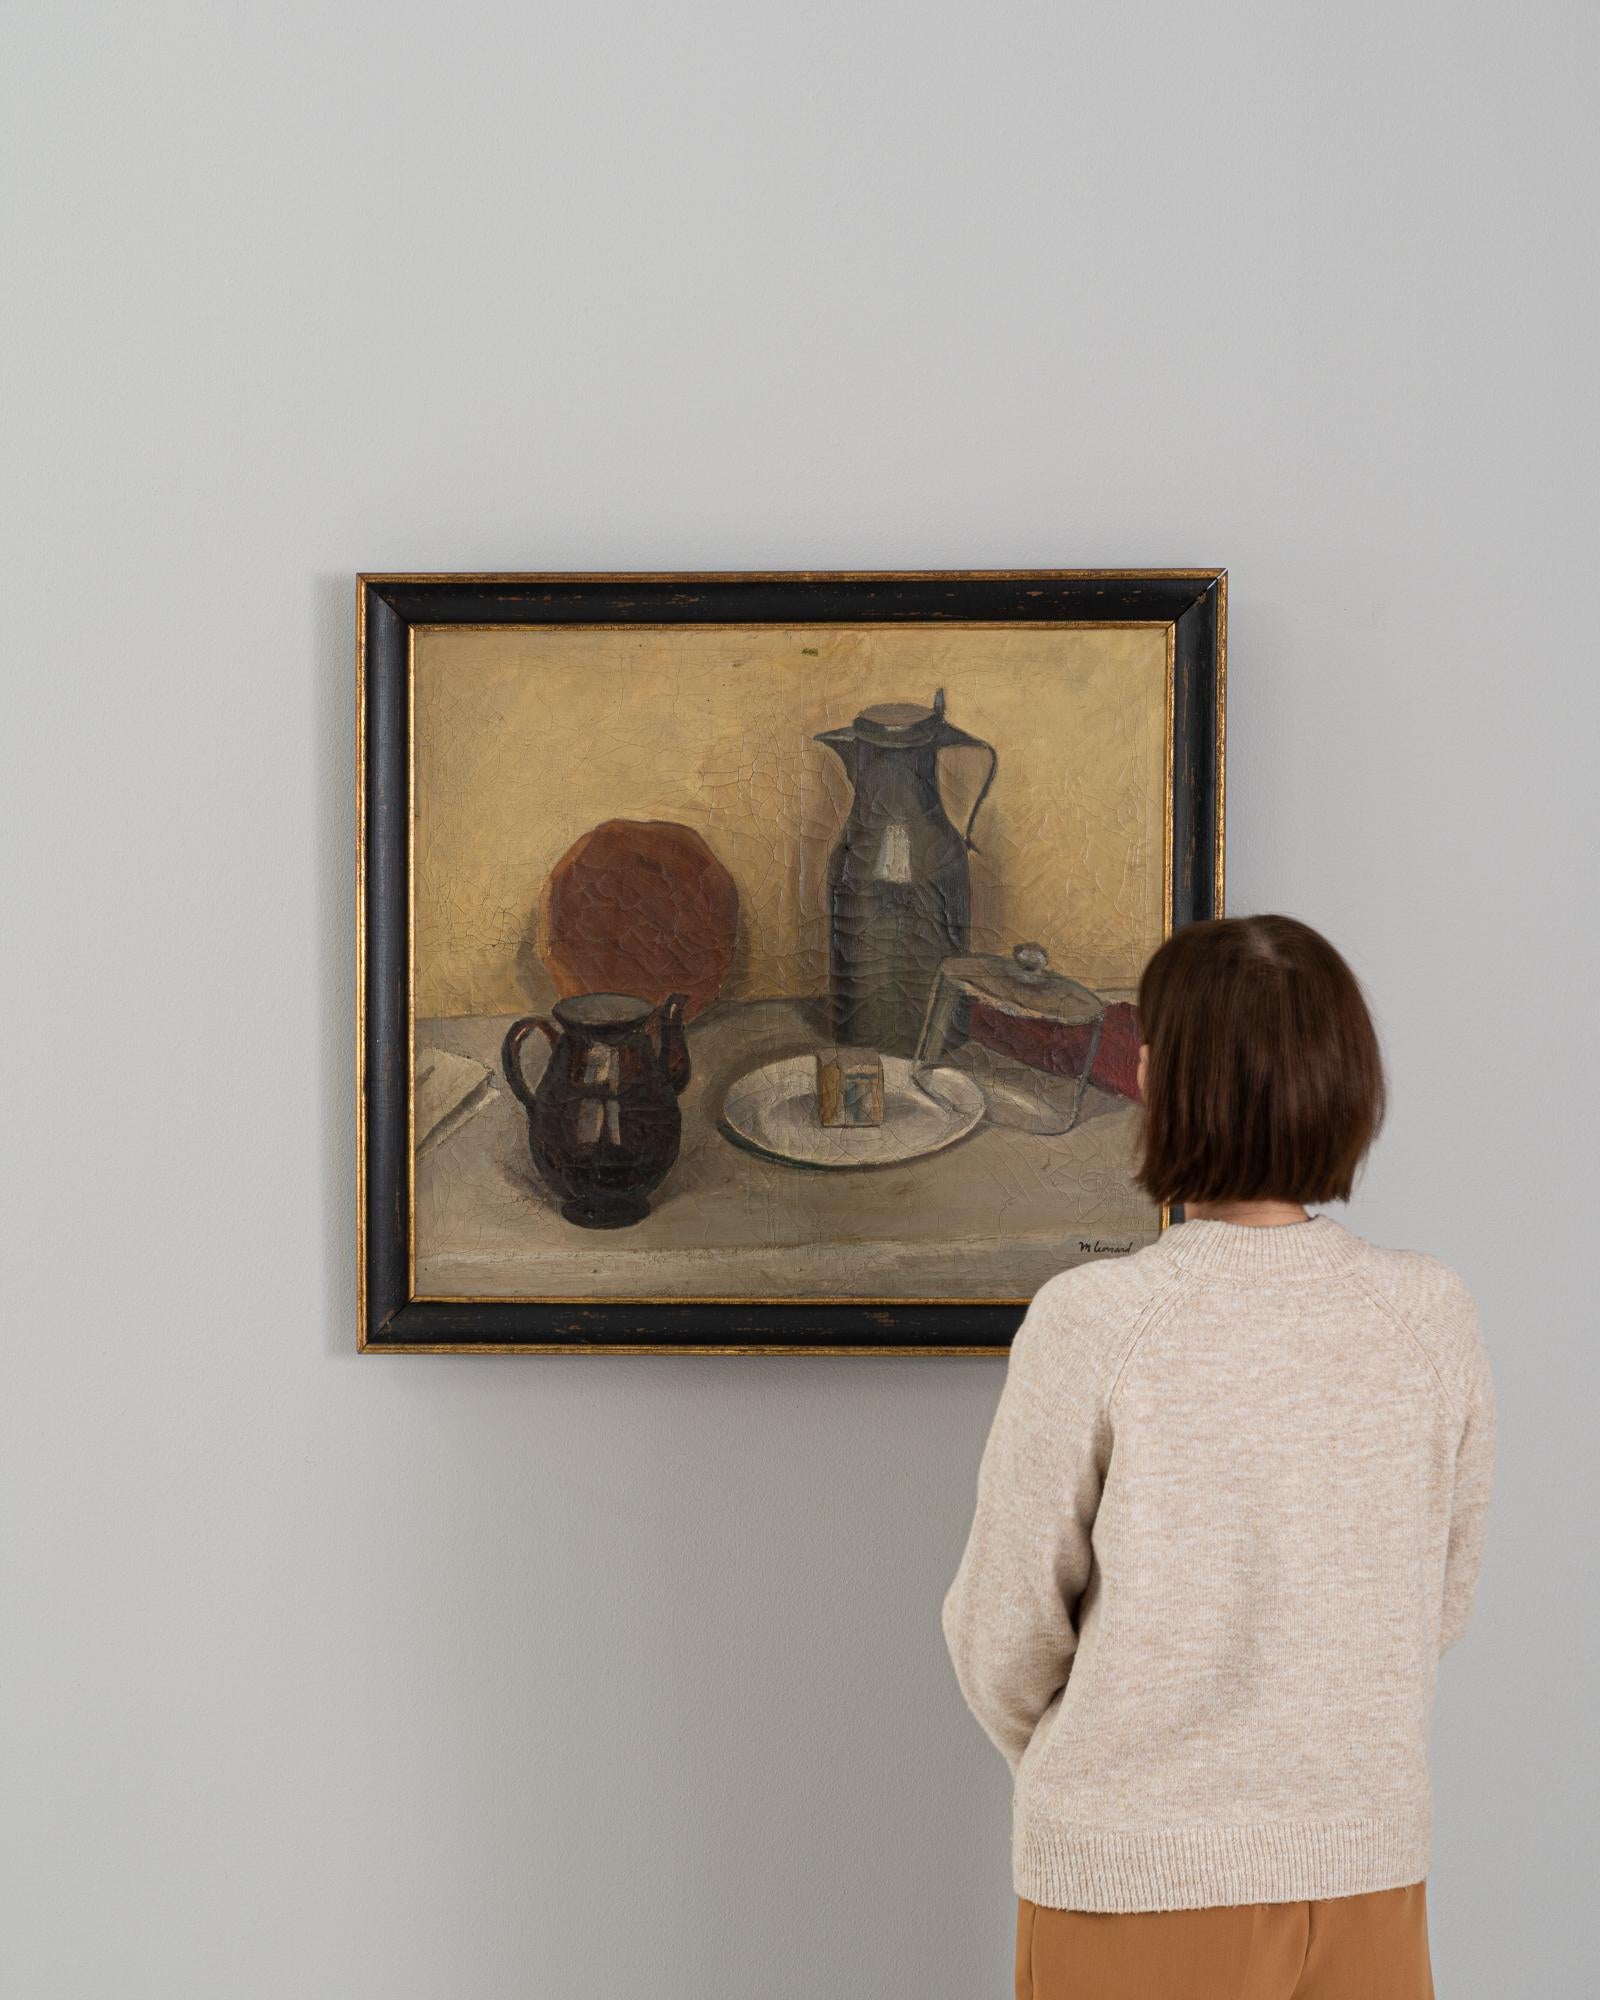 Dieses belgische Gemälde aus dem 20. Jahrhundert ist ein heiteres Stillleben, das die schlichte Eleganz von Alltagsgegenständen in einer durchdachten Komposition einfängt. Die erdige Farbgebung des Kunstwerks wirkt beruhigend und vermittelt ein